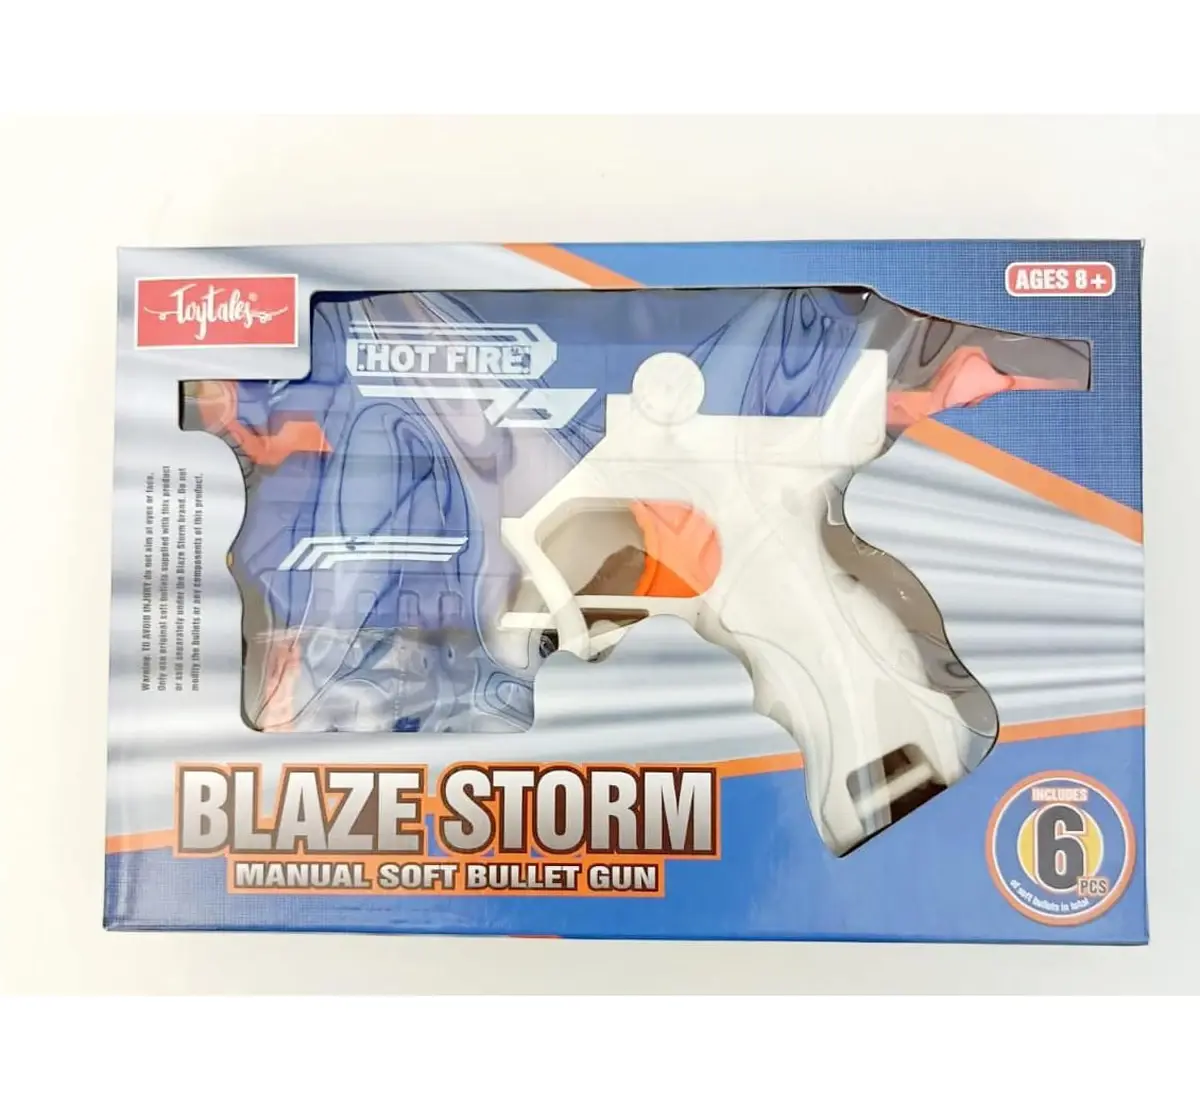 Toytales Blaze Storm Gun 4406 Blasters & Accessories Multicolor 8Y+